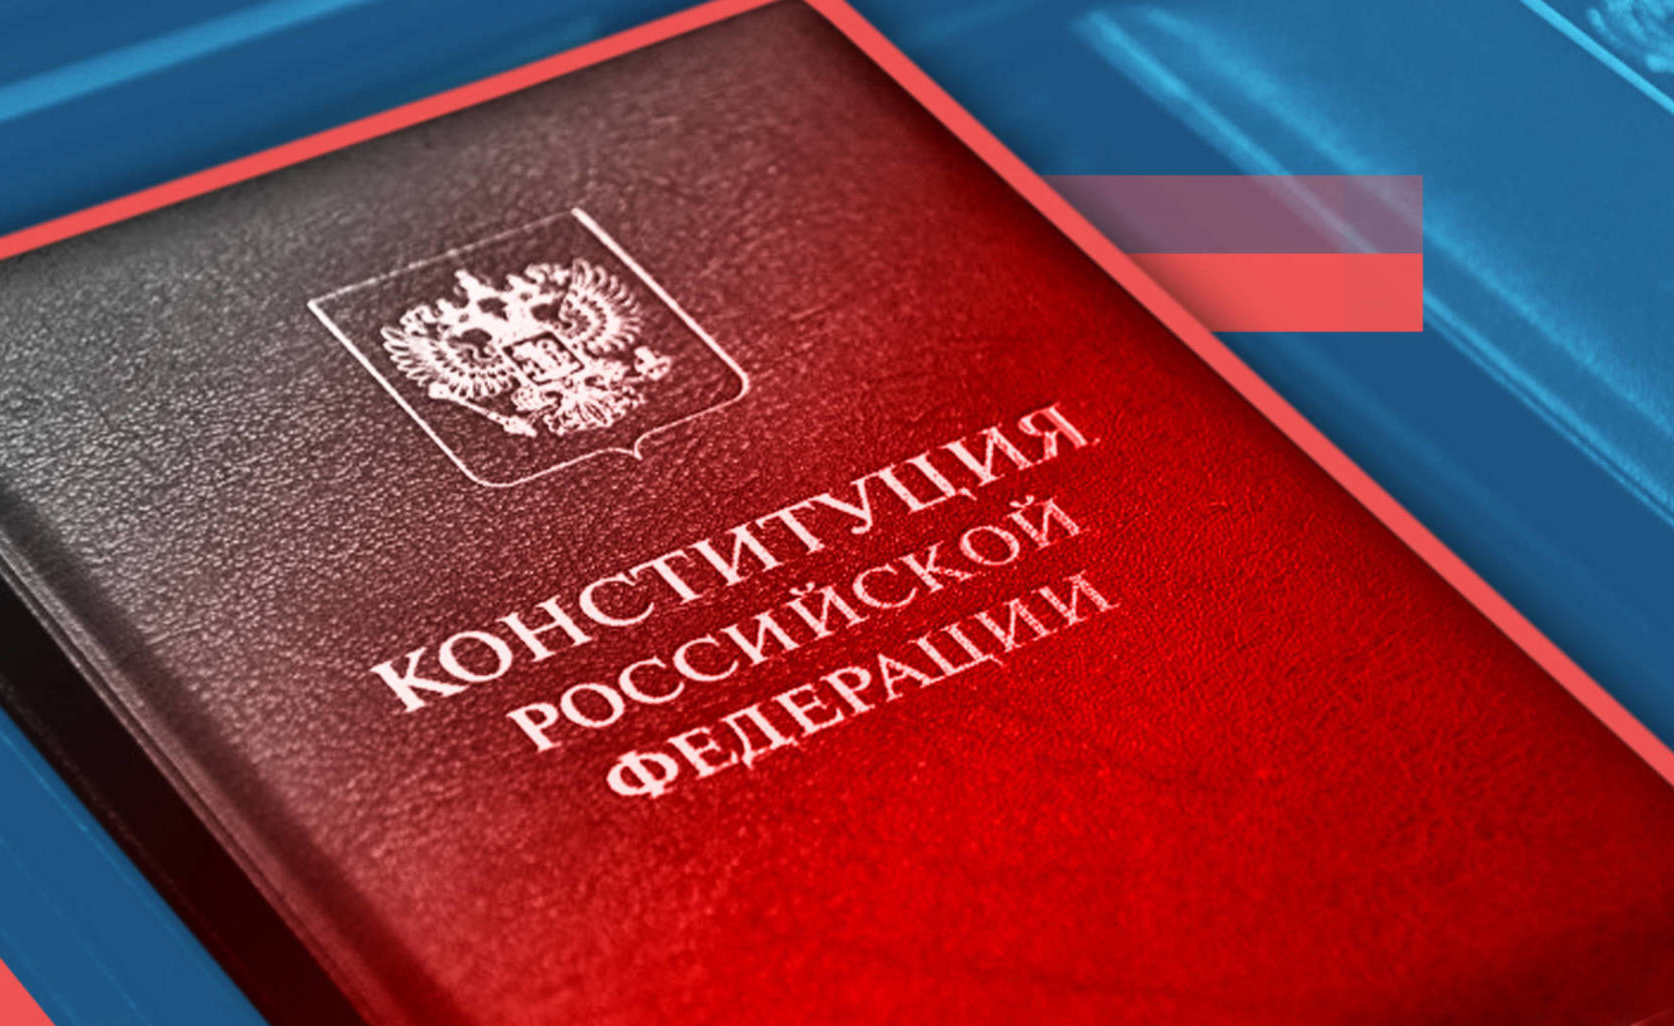 Сегодня Государственная Дума приняла во втором чтении законопроекты, внесенные Президентом во исполнение обновленных положений Конституции